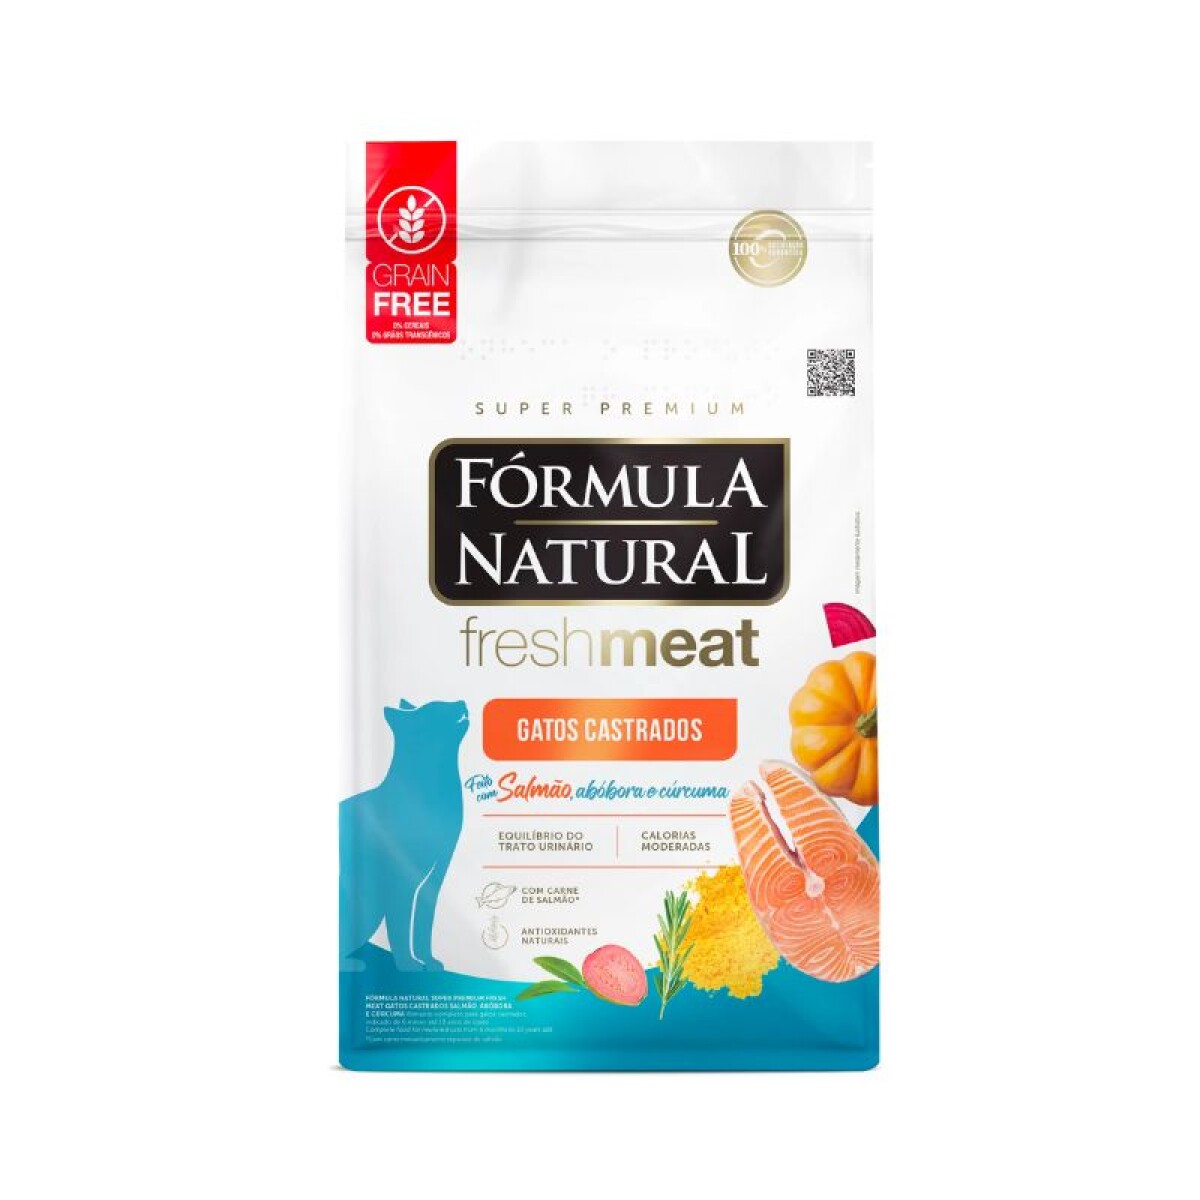 FORMULA NATURAL FRESH MEAT GATOS CAST. 7KG - Formula Natural Fresh Meat Gatos Cast. 7kg 